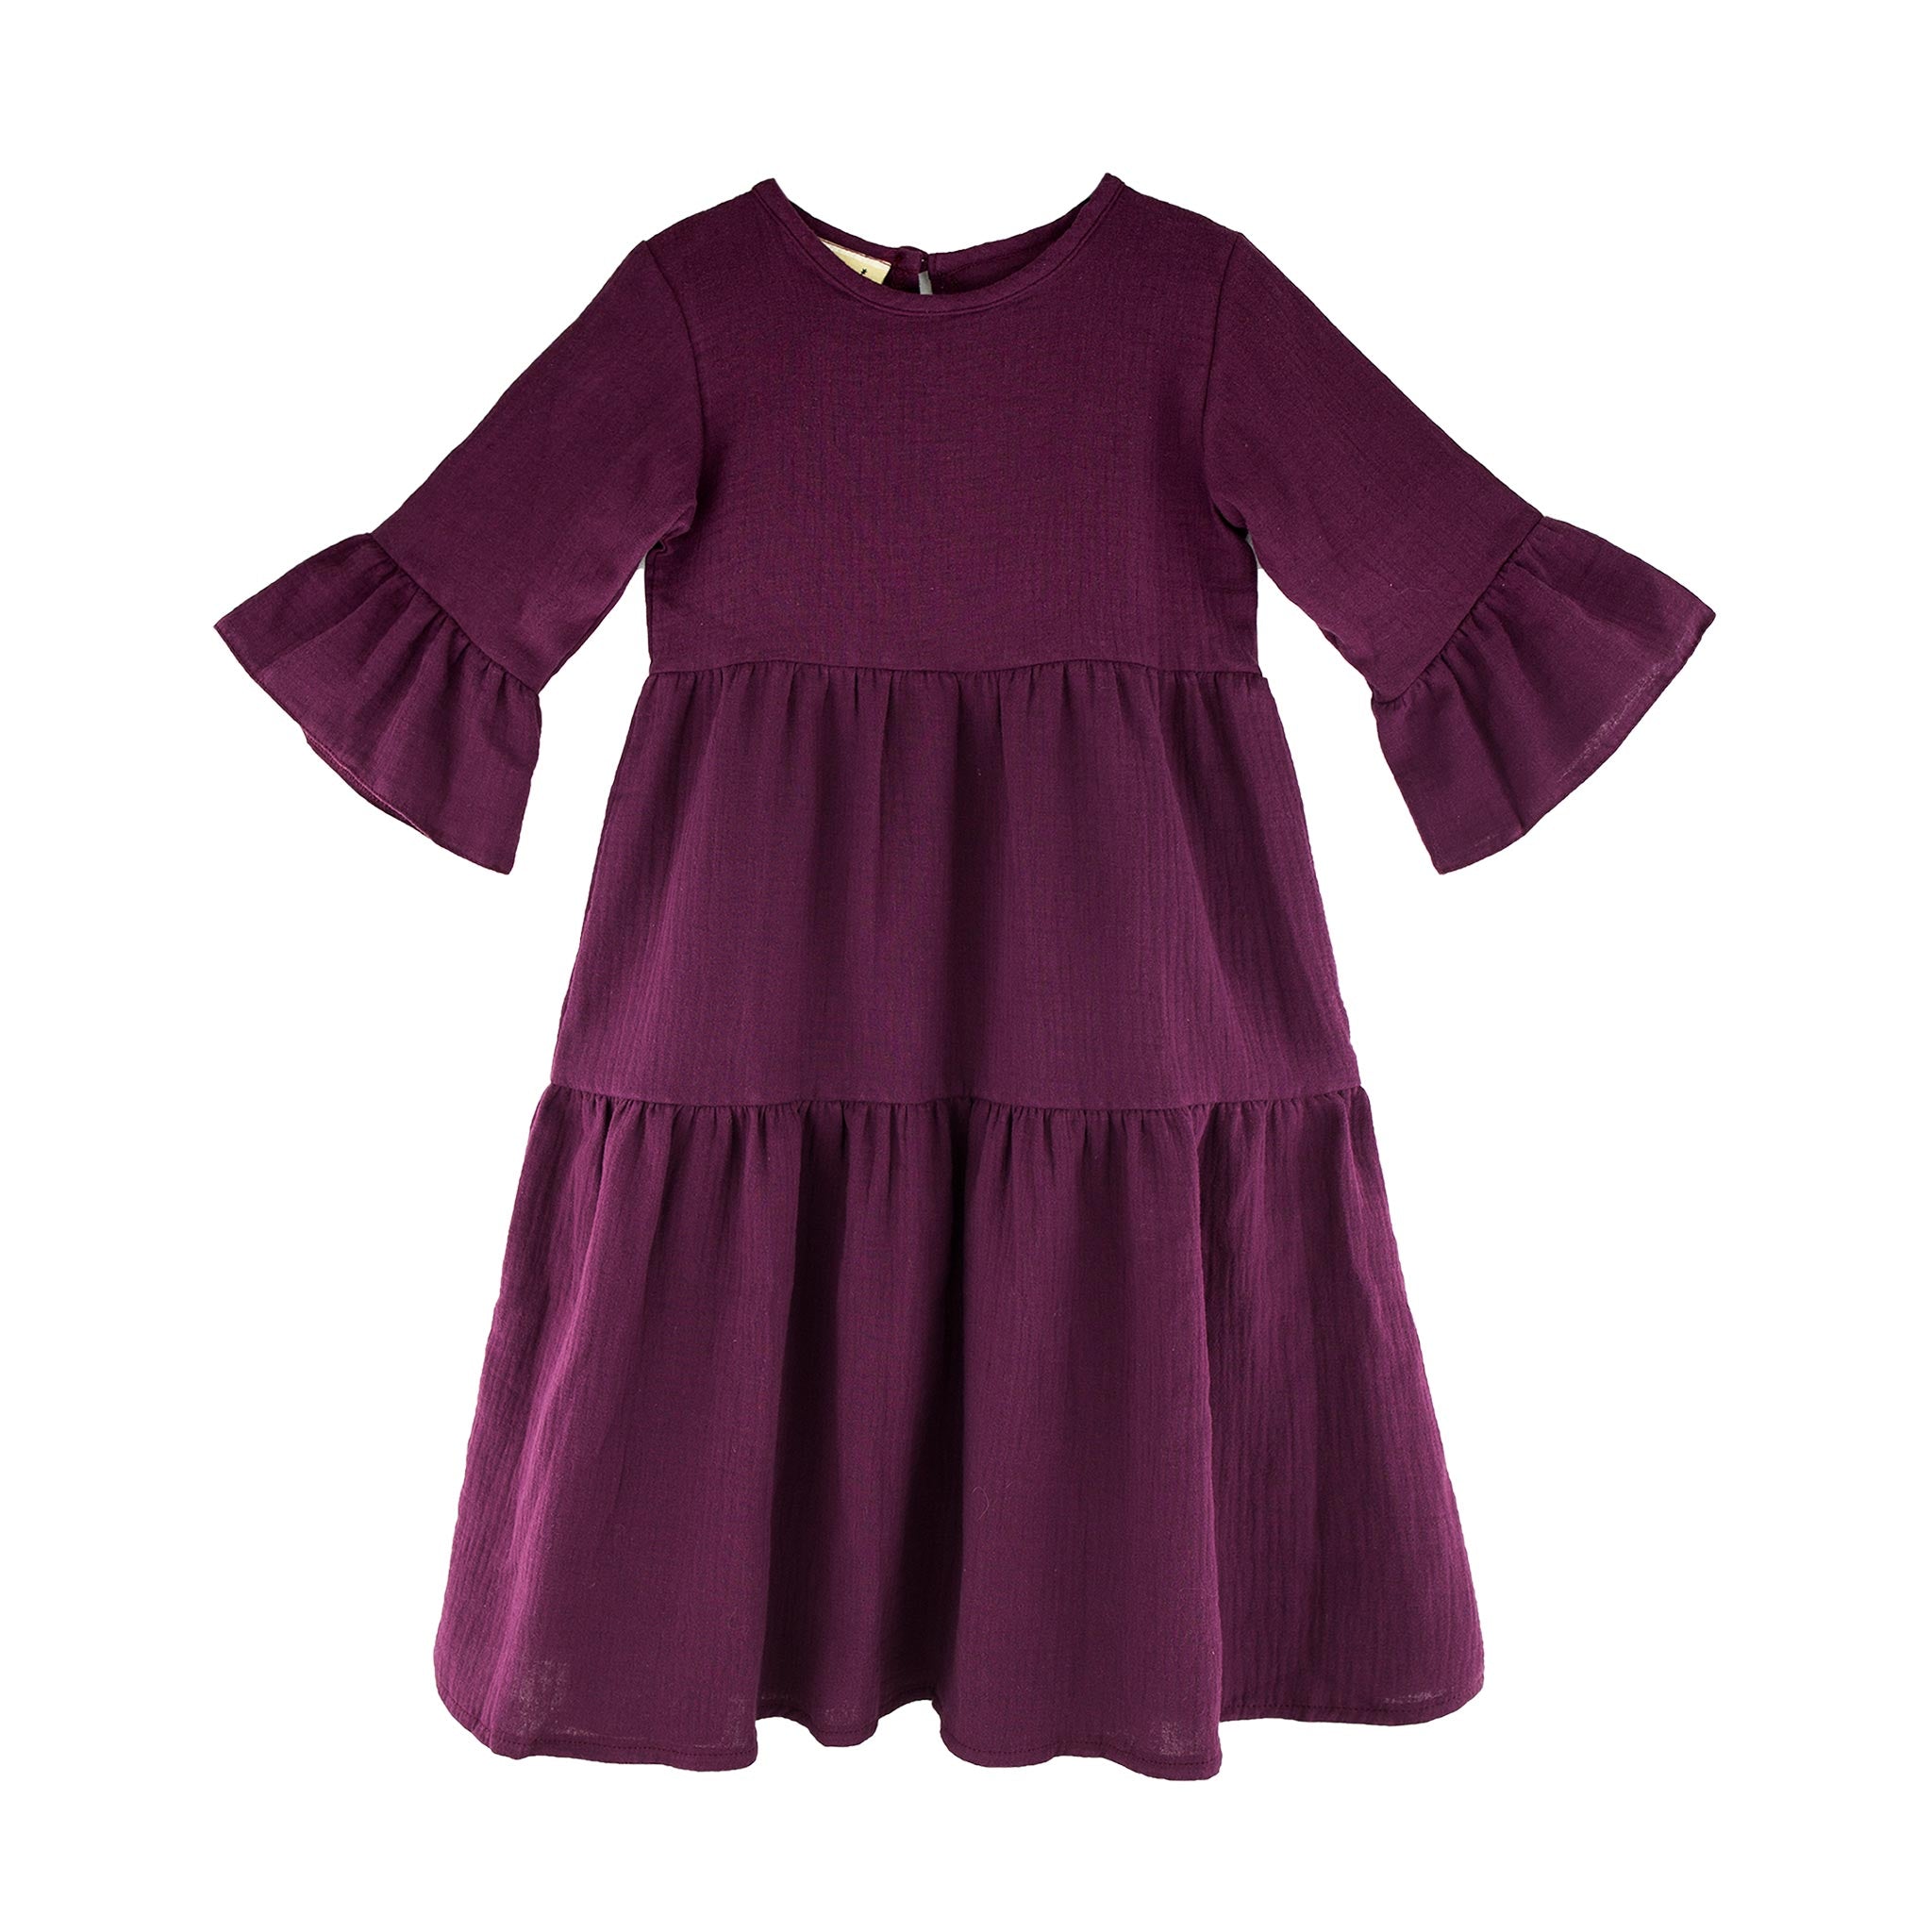 maxi-dress-long-sleeves-bordeaux-wine-red-purple-kids